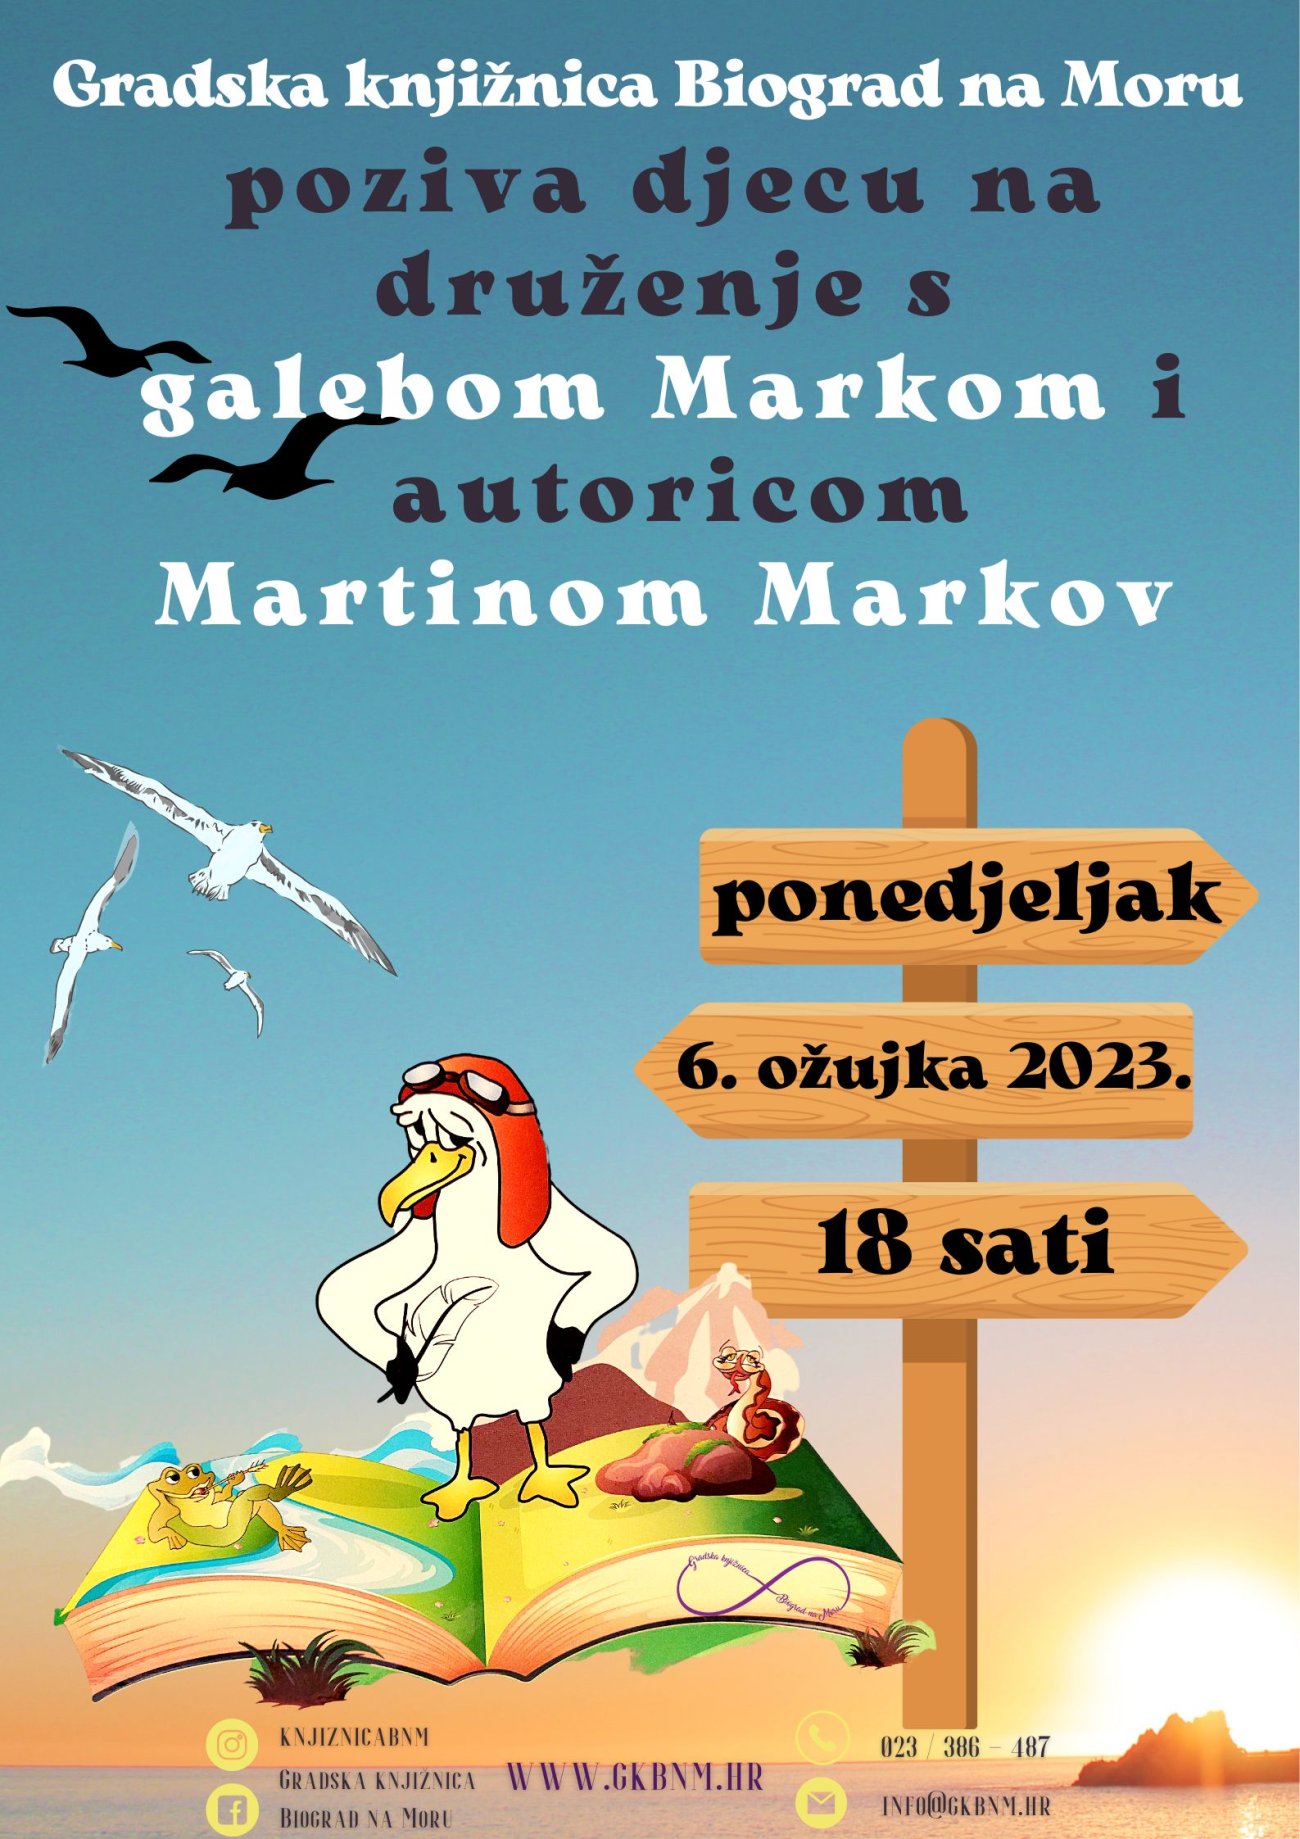 Galeb Marko u Gradskoj knjižnici Biograd na Moru, 6. ožujka 2023.